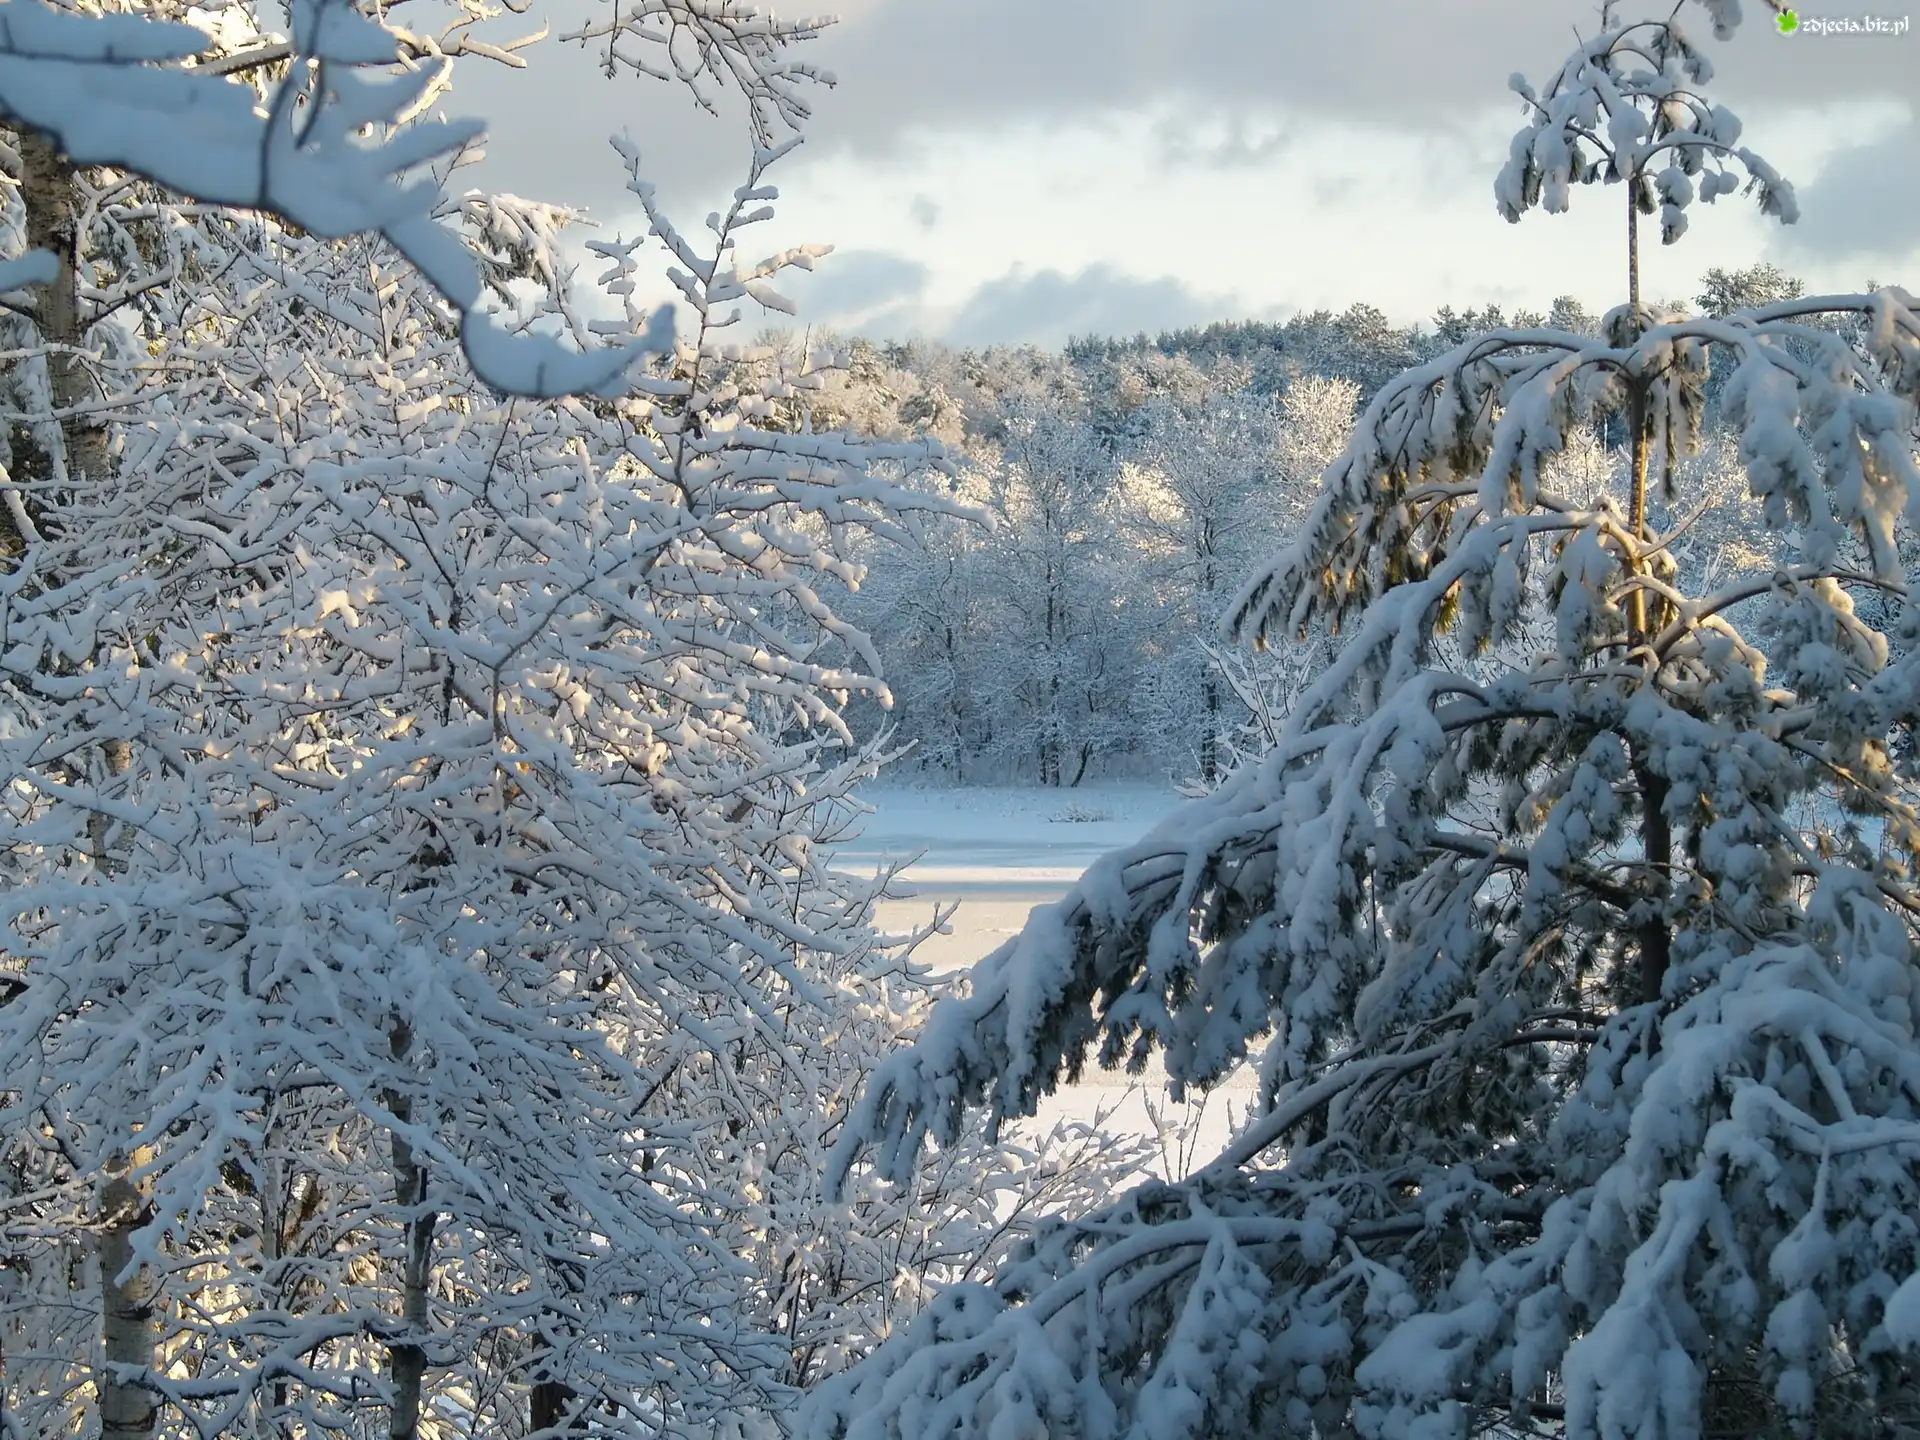 Las, Śnieg, Zima